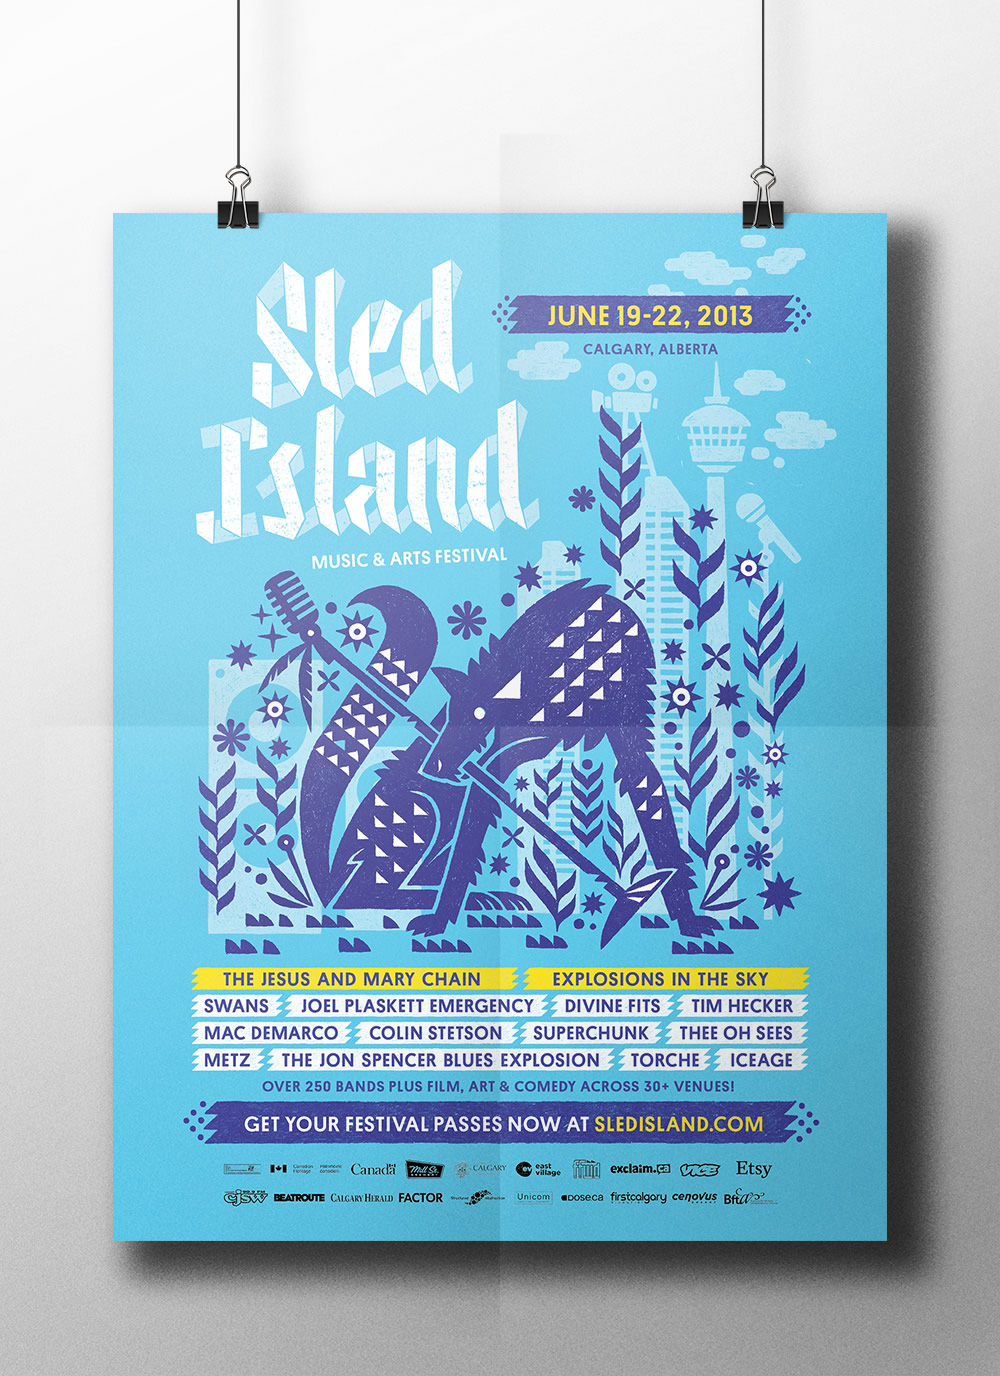 Sled Island 2013 music festival poster design